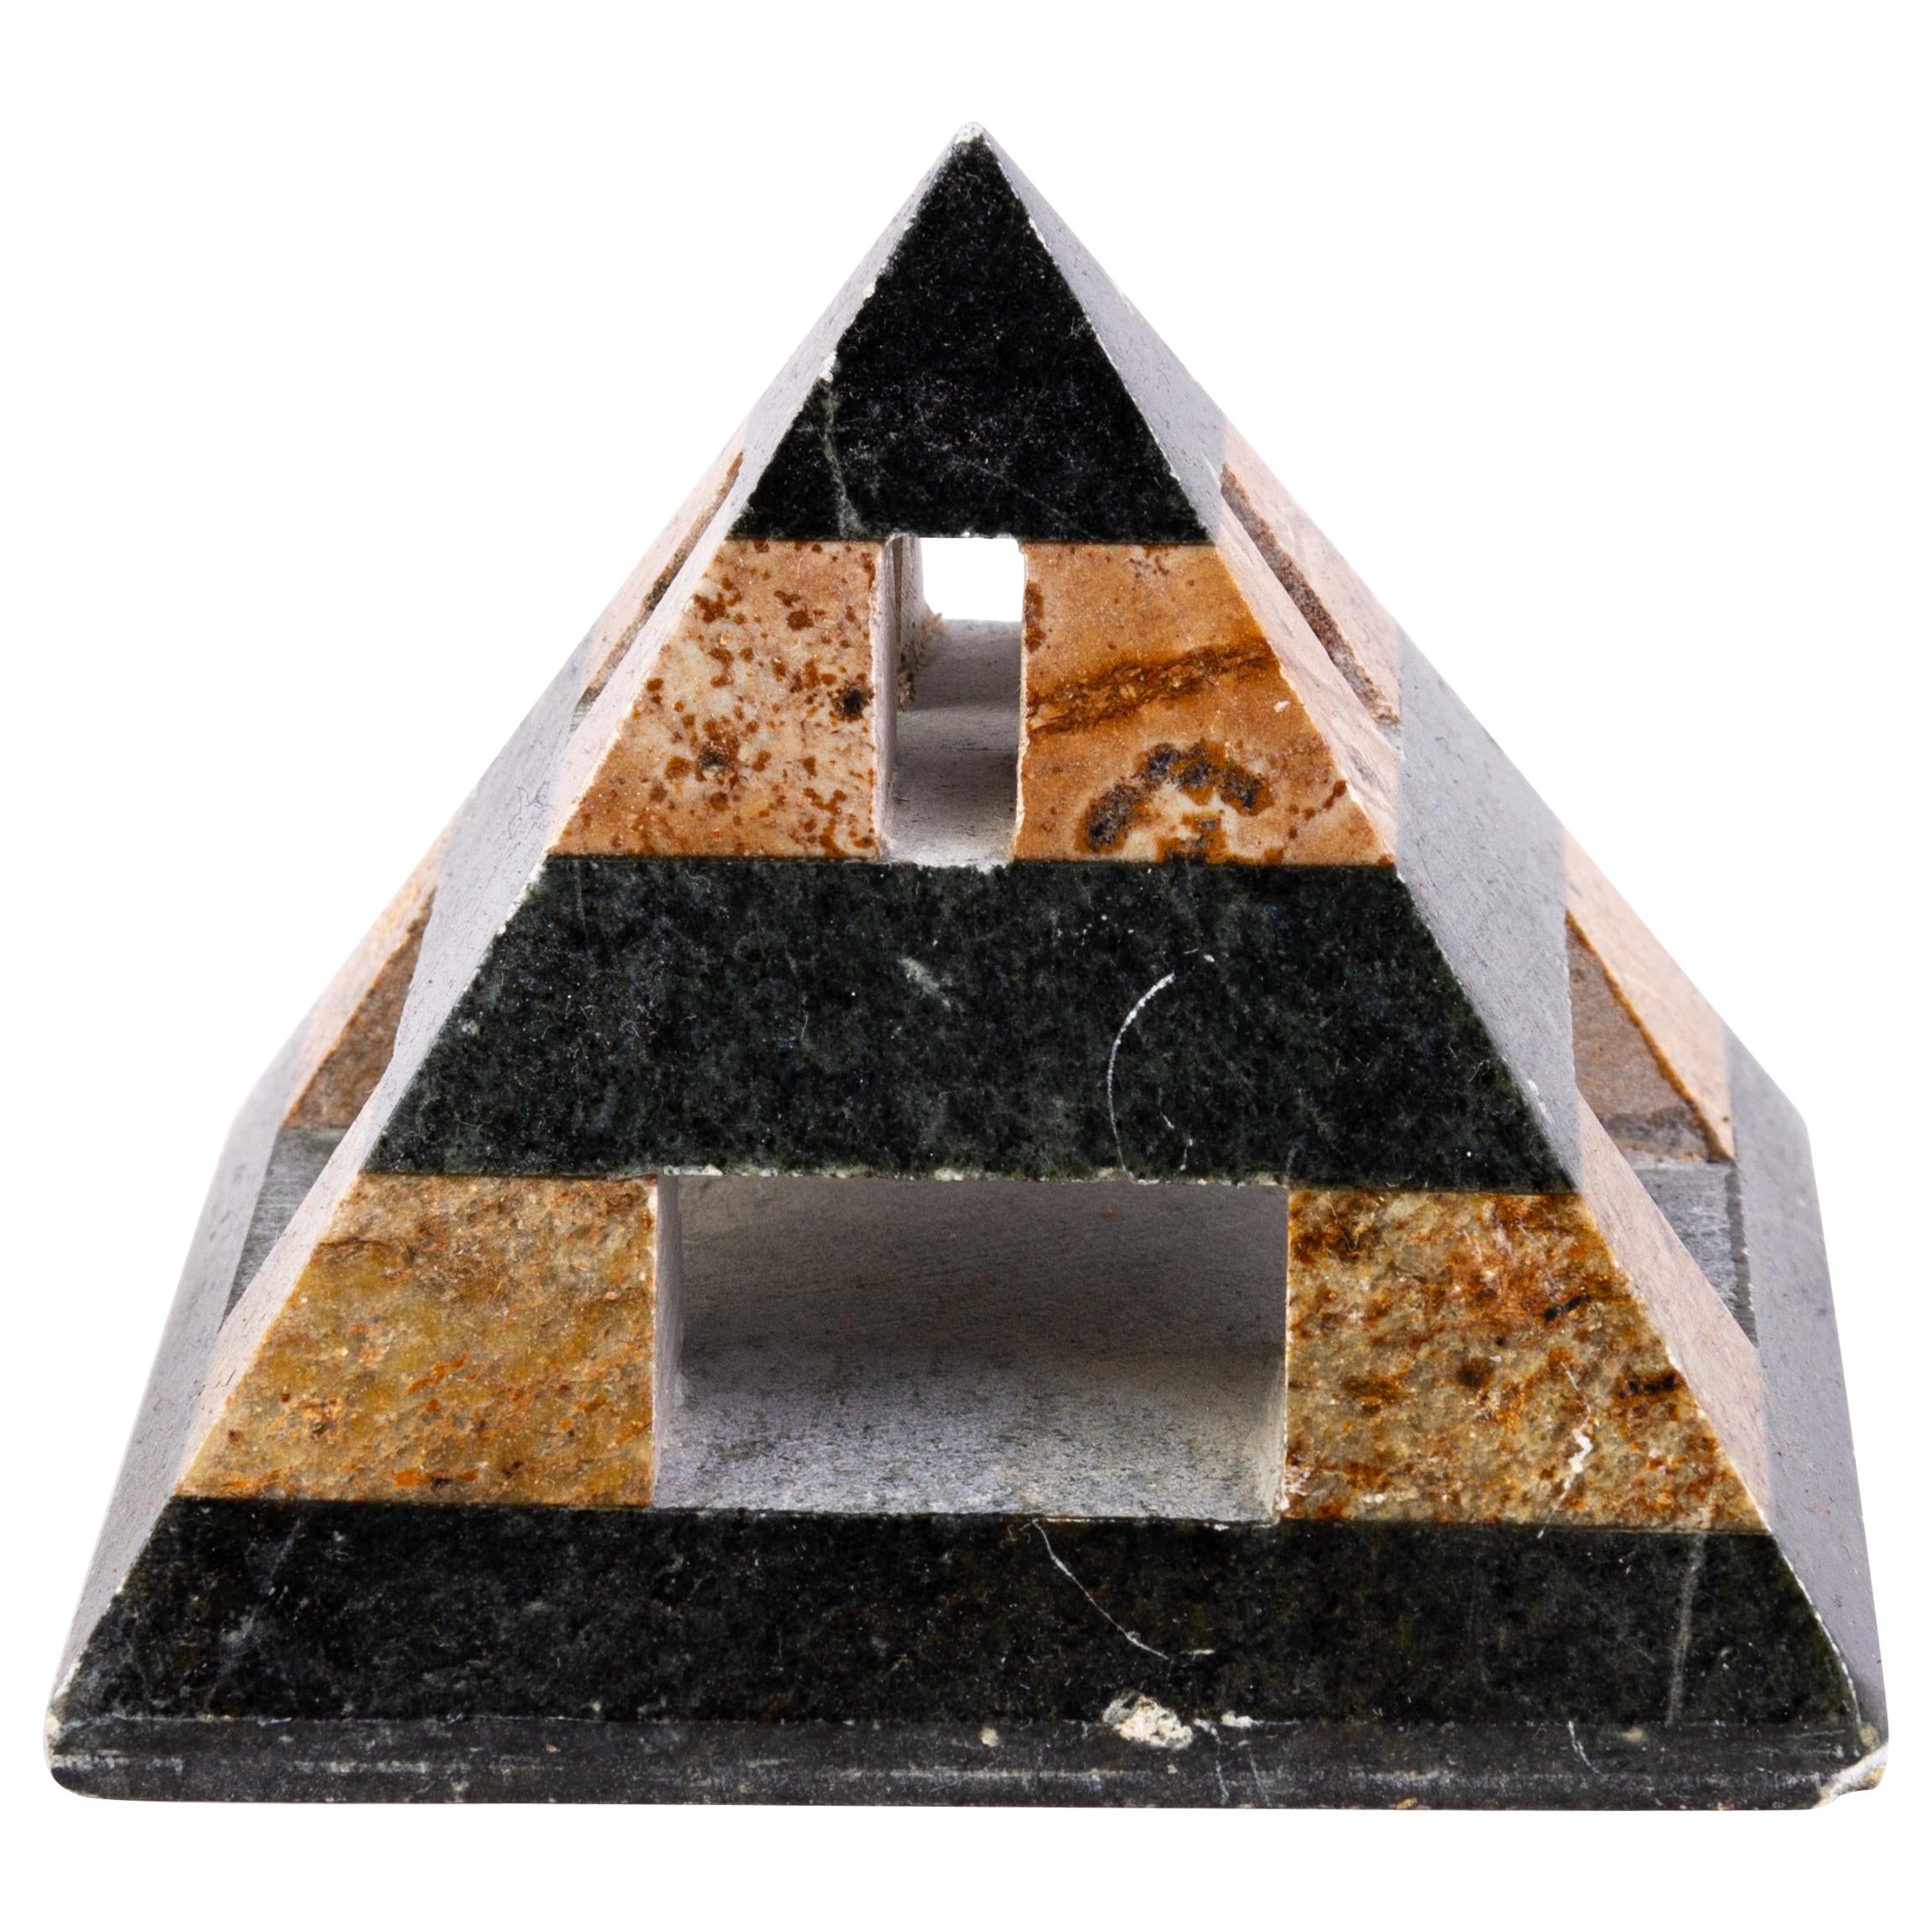 Grand Tour Geode Specimen Pyramid Desk Paperweight 